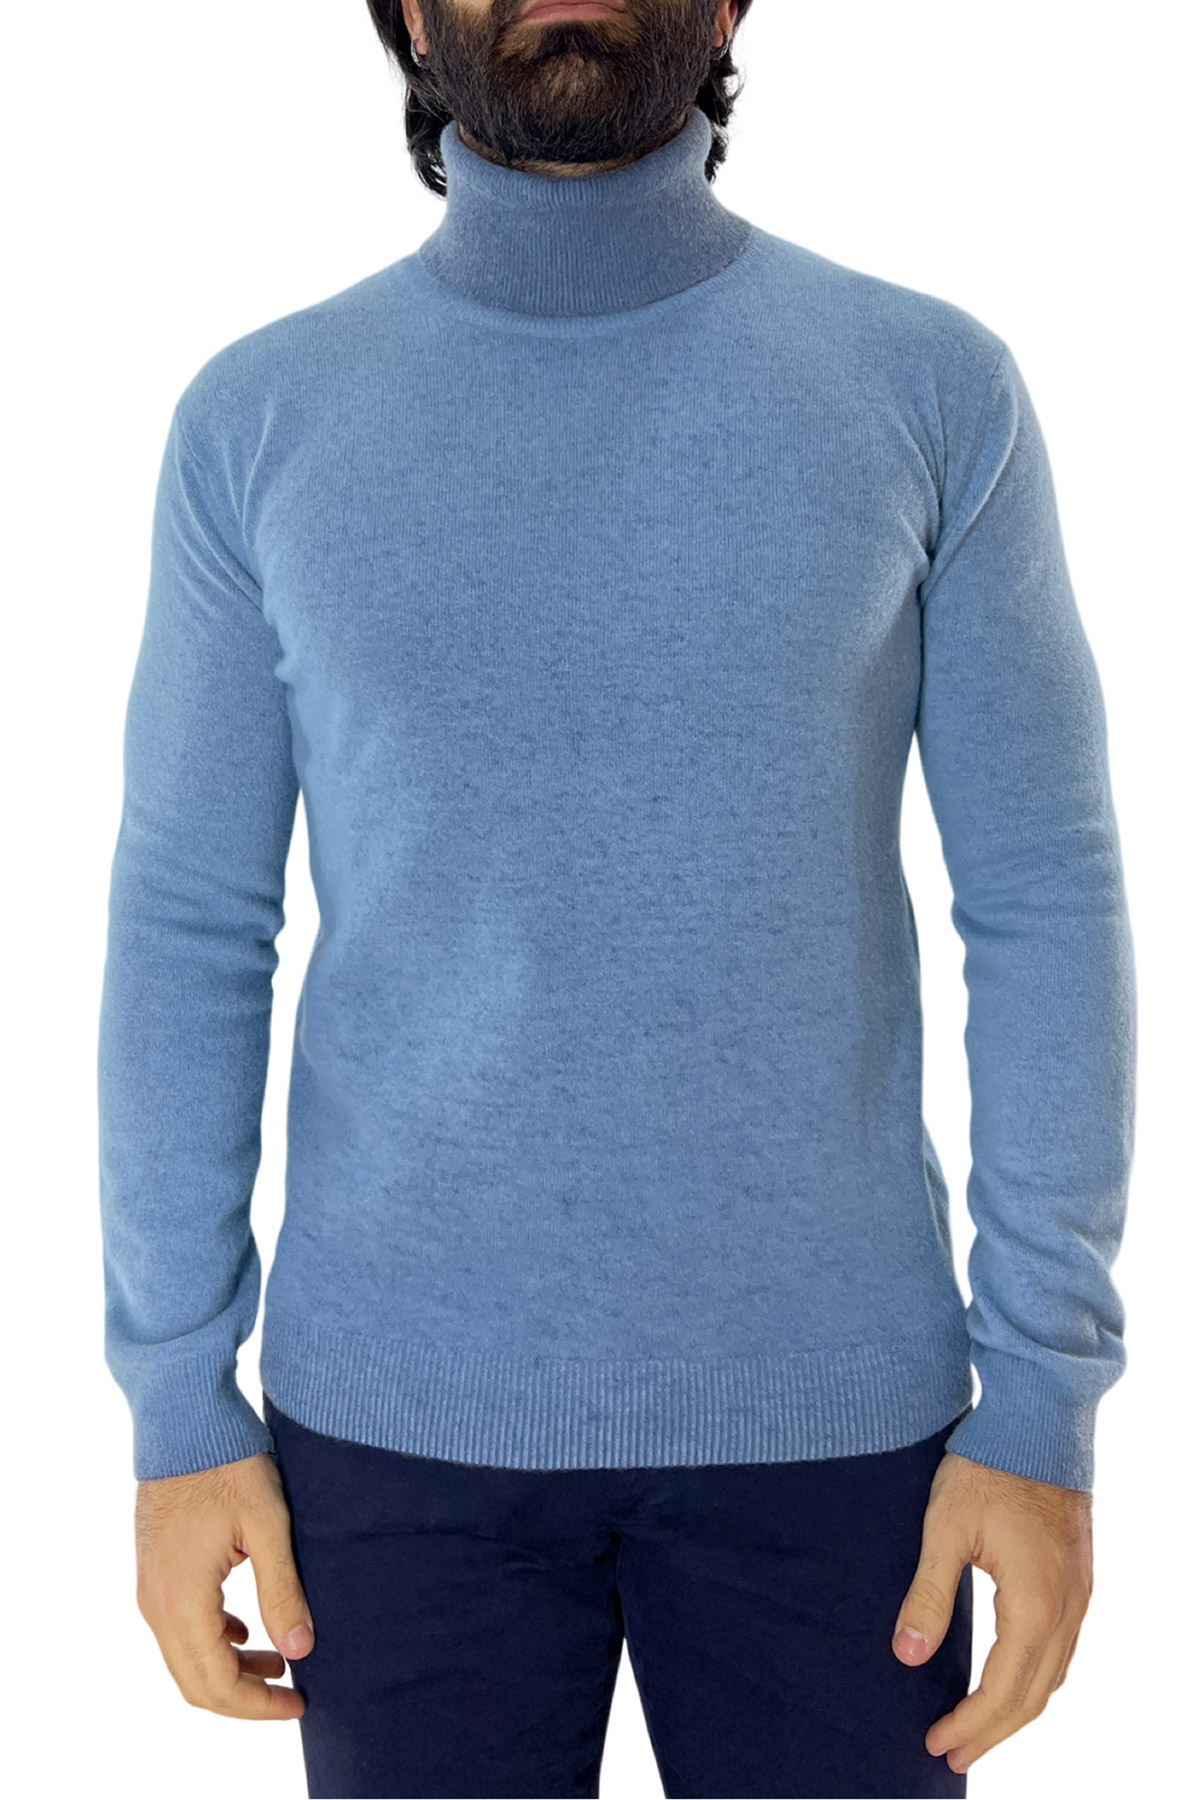 Maglione collo alto da uomo azzurro stone wash in lana made in italy tinta unita